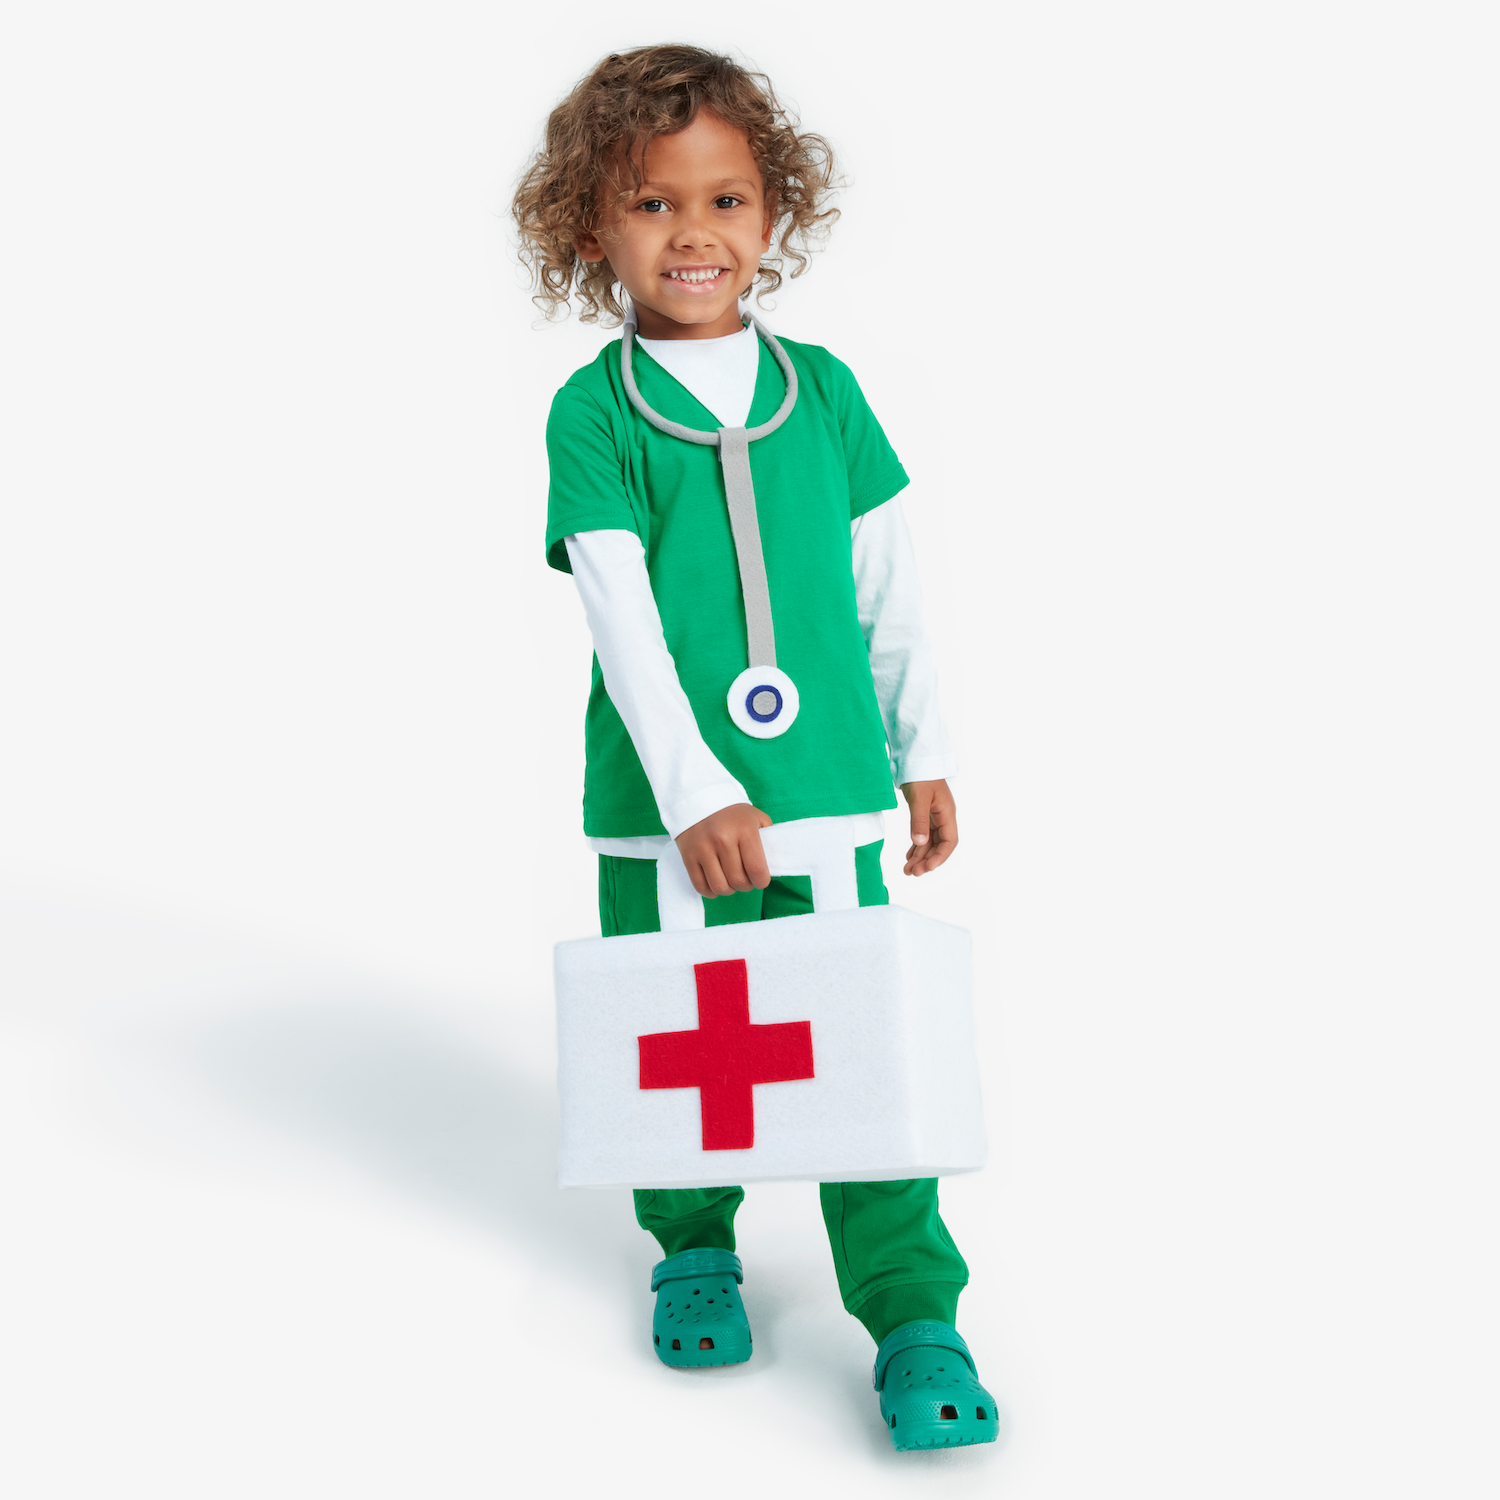 DIY Nurse Costume